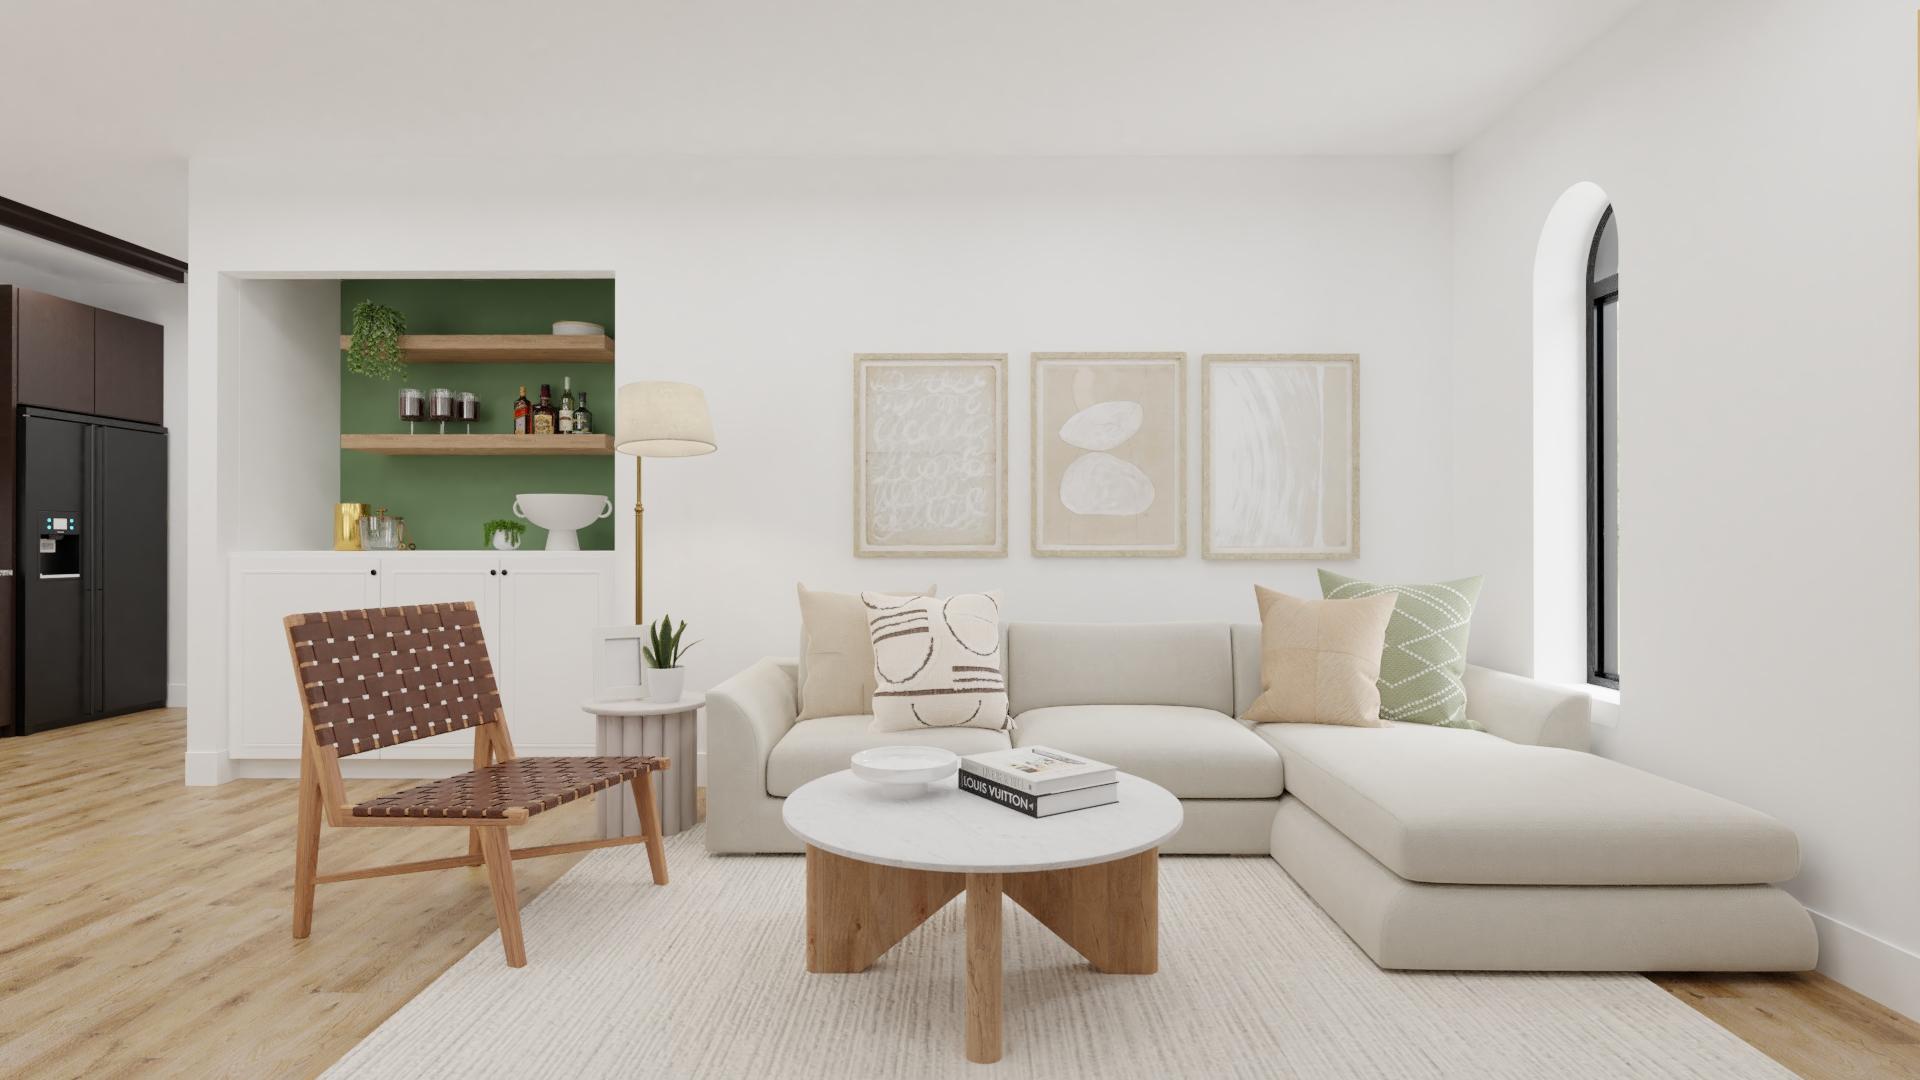 Contemporary Boho Living Room With A Pop of Green